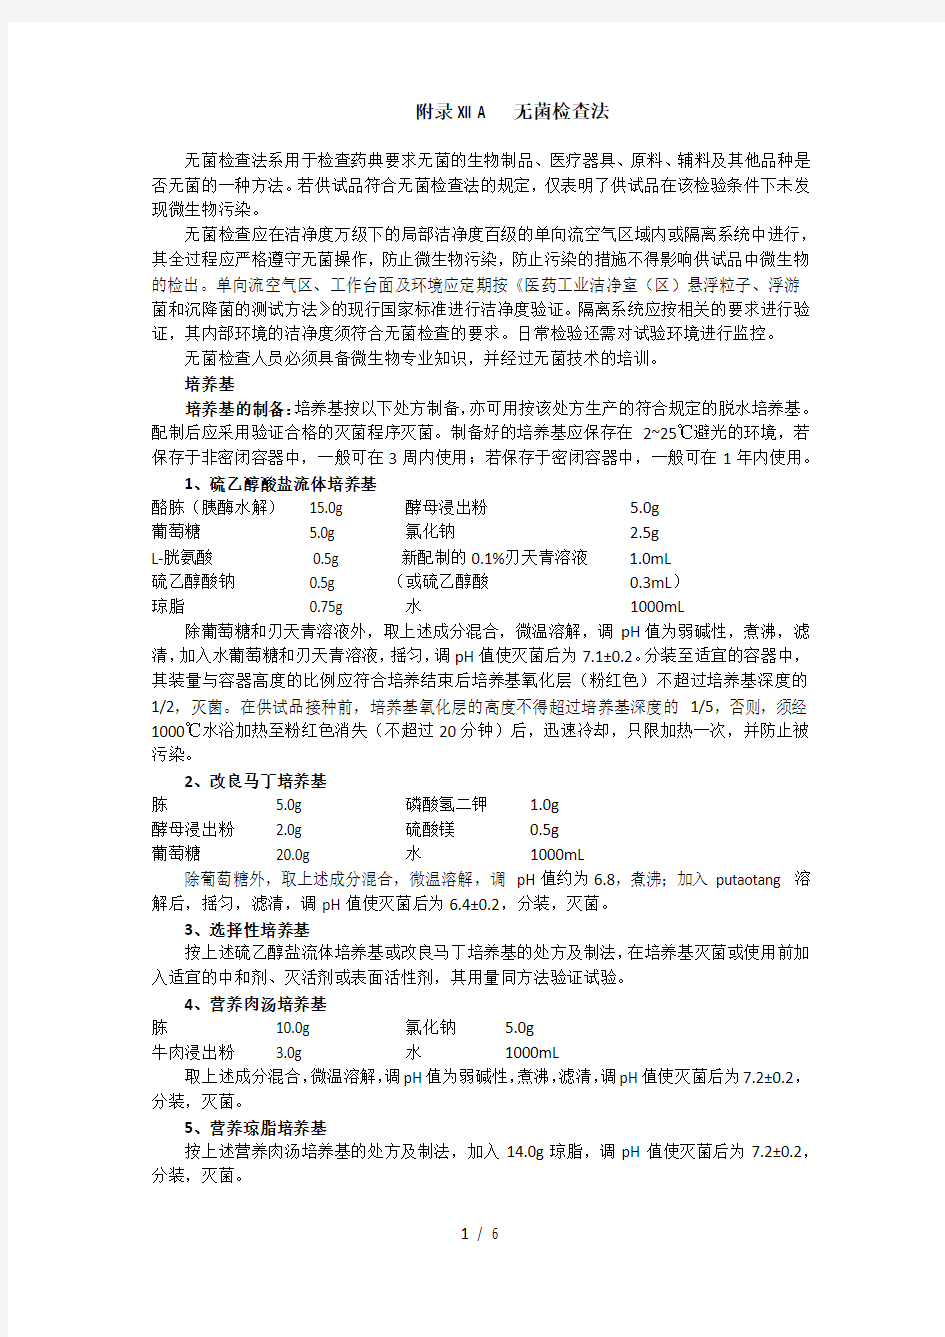 无菌检查法中国药典第三部附录XIIA